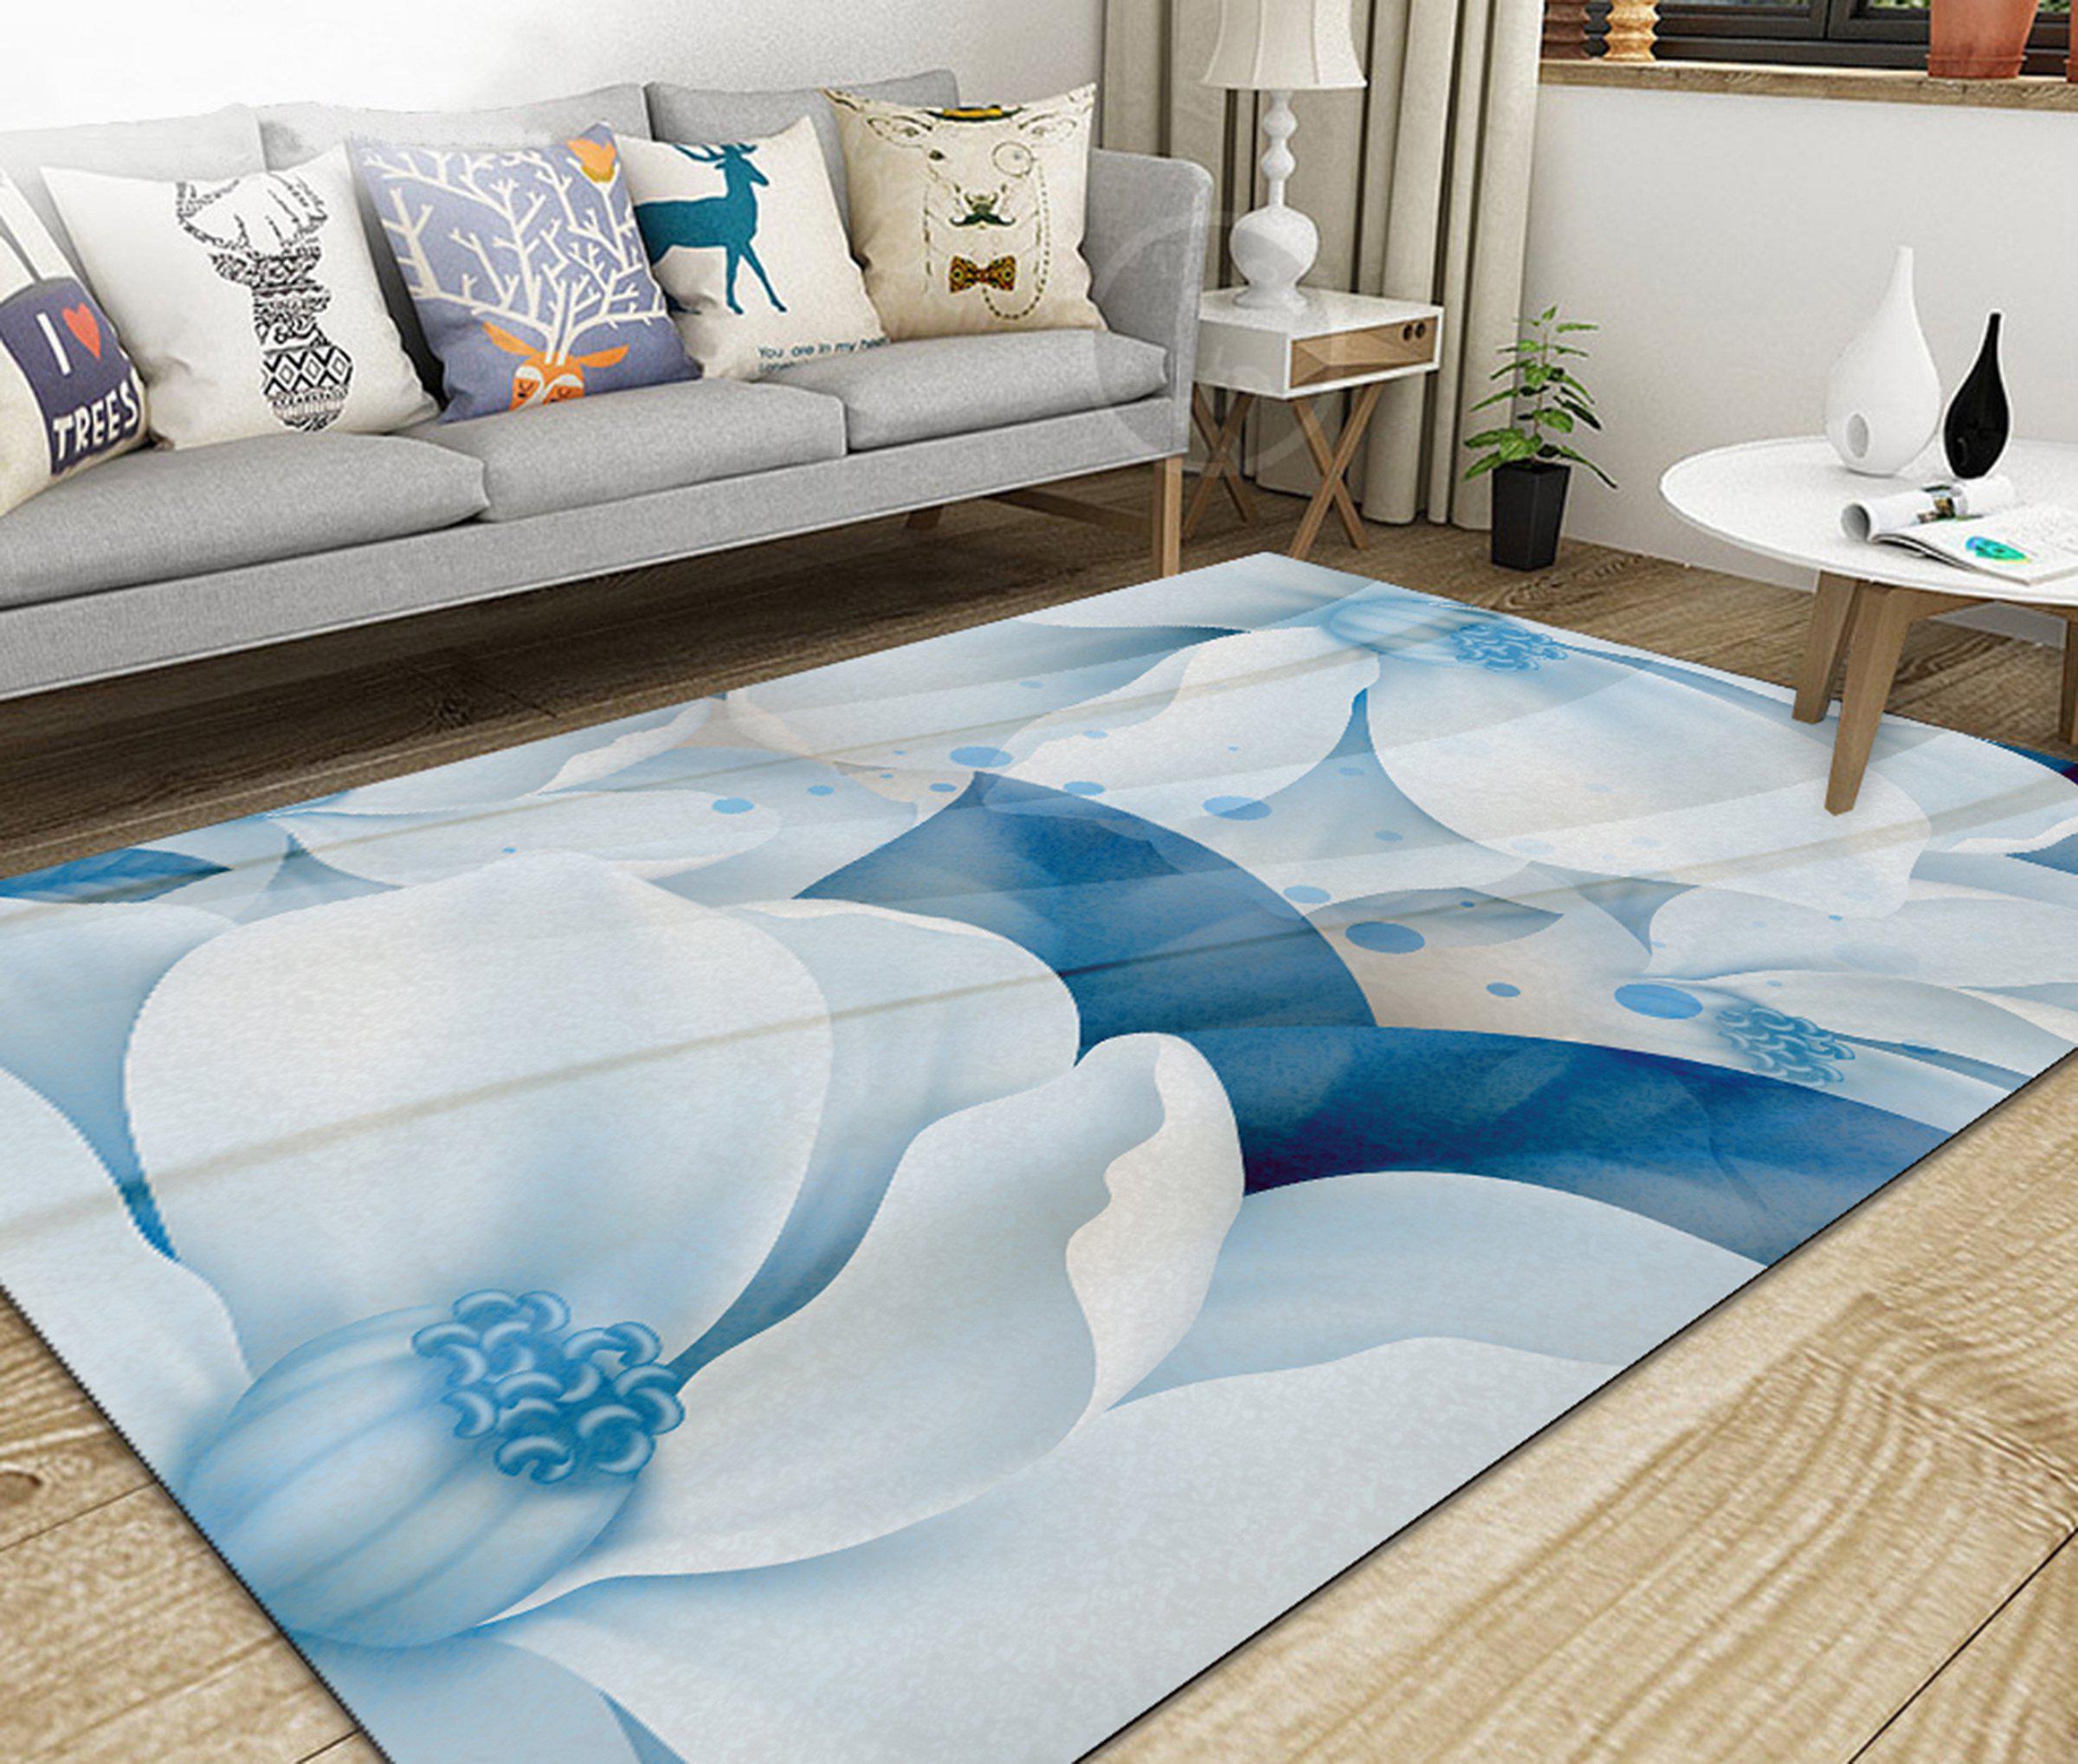 3D Home Carpet White Flower WG425 Non Slip Rug Mat, 40cmx60cm (15.7"x23.6")